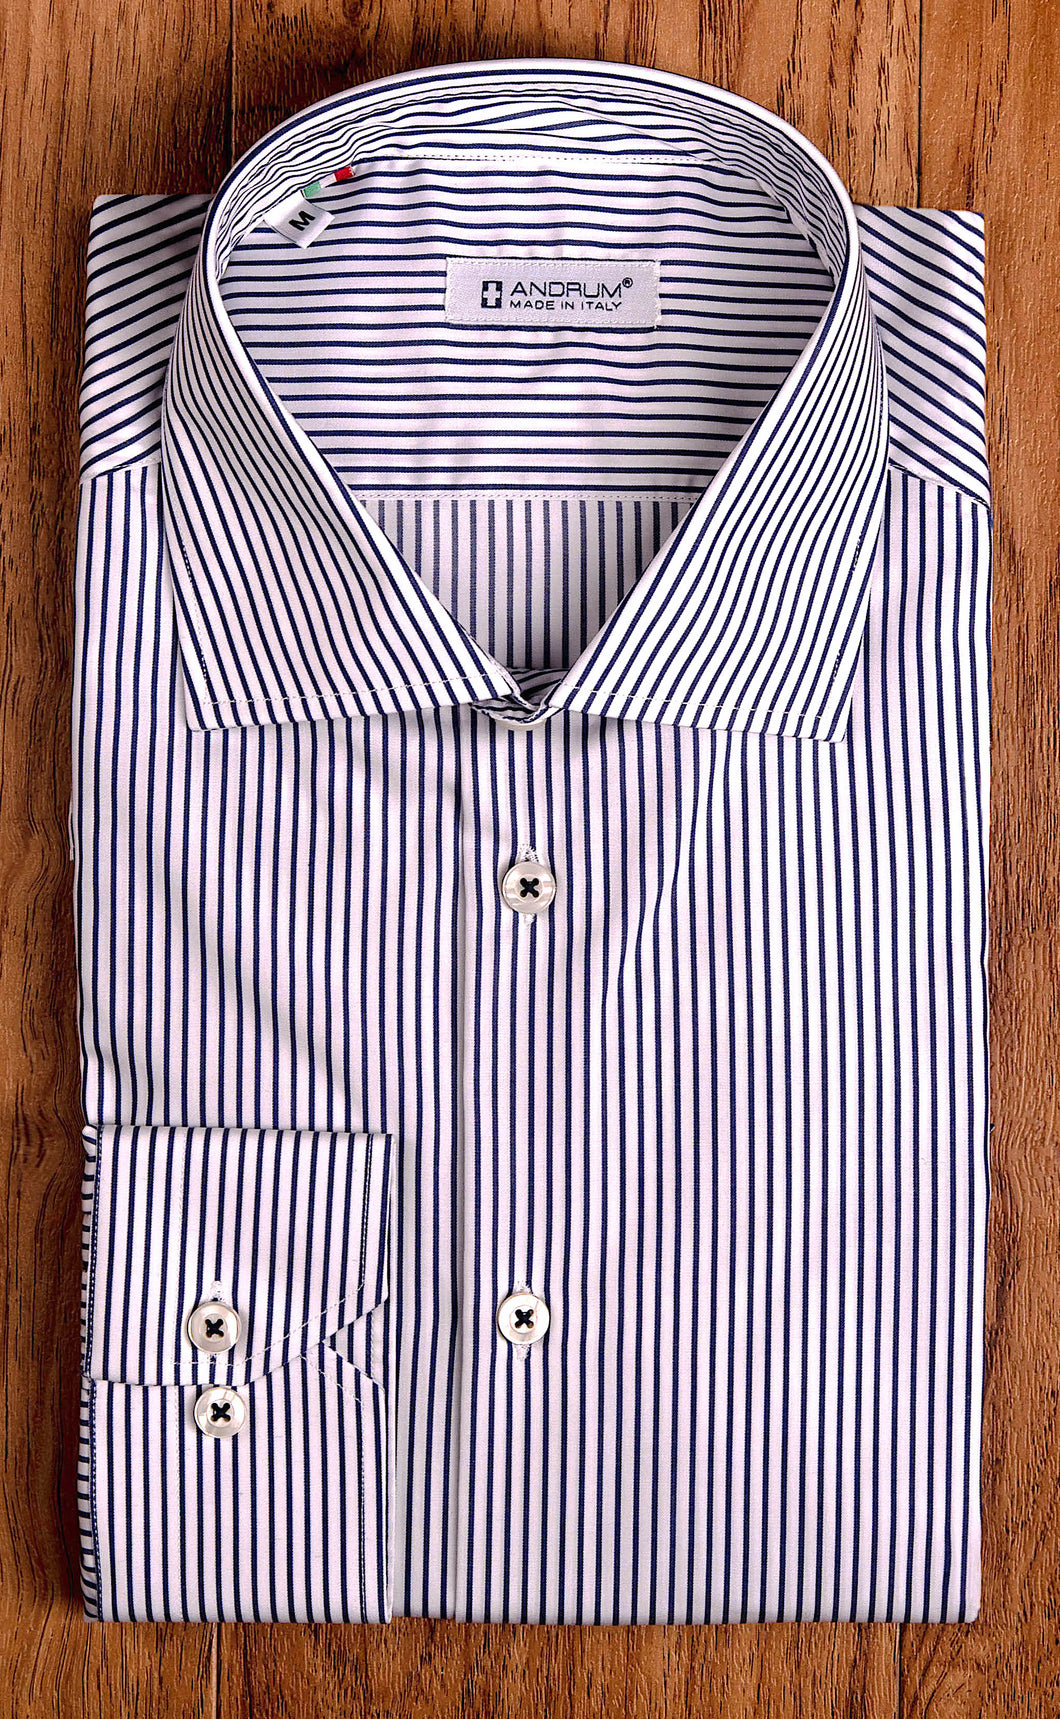 Camicia Uomo alta qualità puro cotone a righe blu navy made in Italy